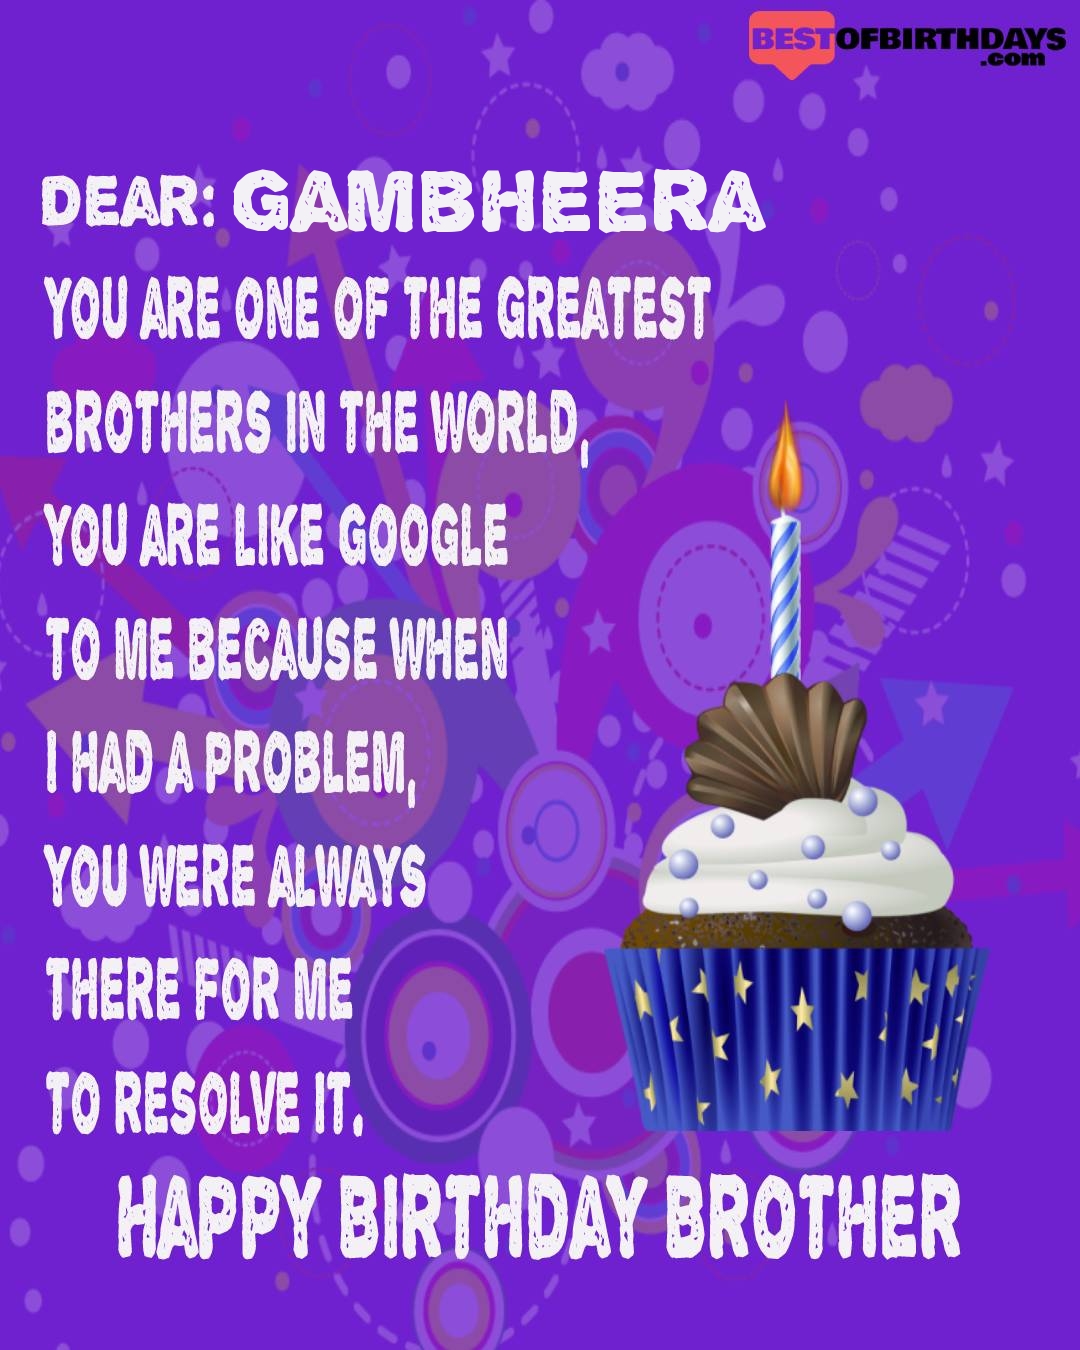 Happy birthday gambheera bhai brother bro